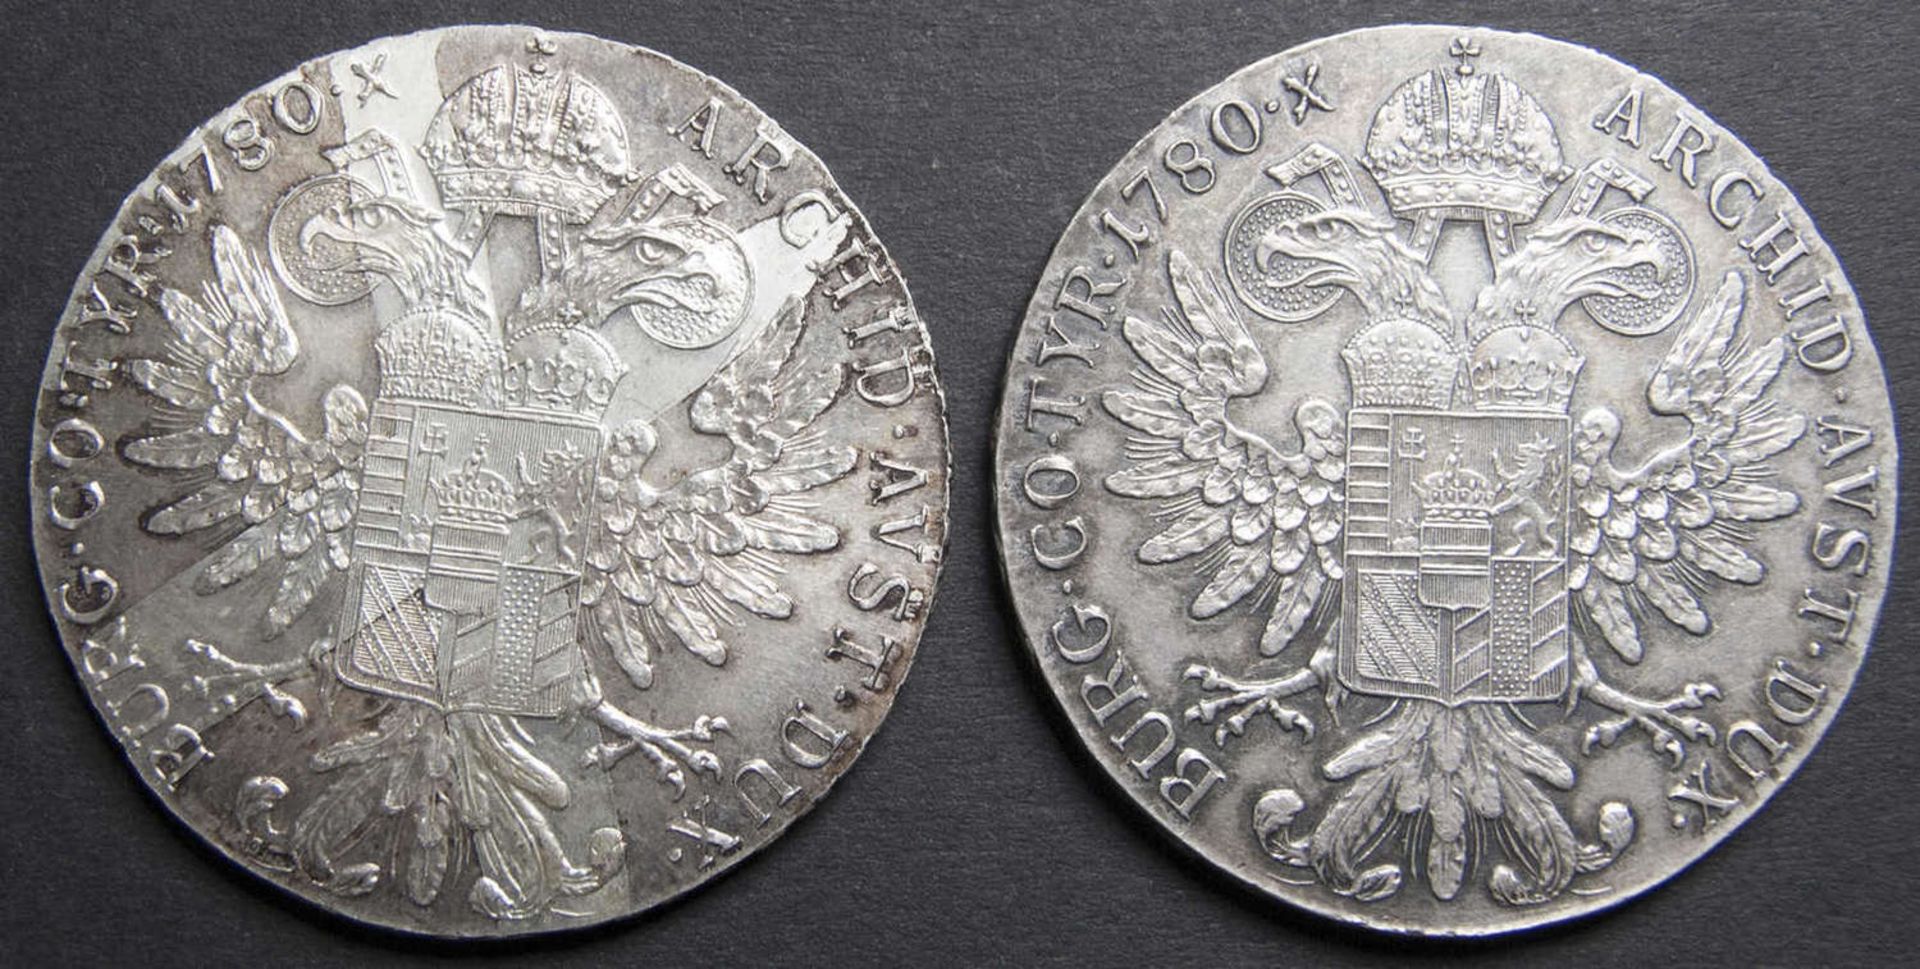 Österreich 1780, zwei Maria Theresien - Taler. Silber. Gesamtgewicht: ca. 56,2 g. - Bild 2 aus 2